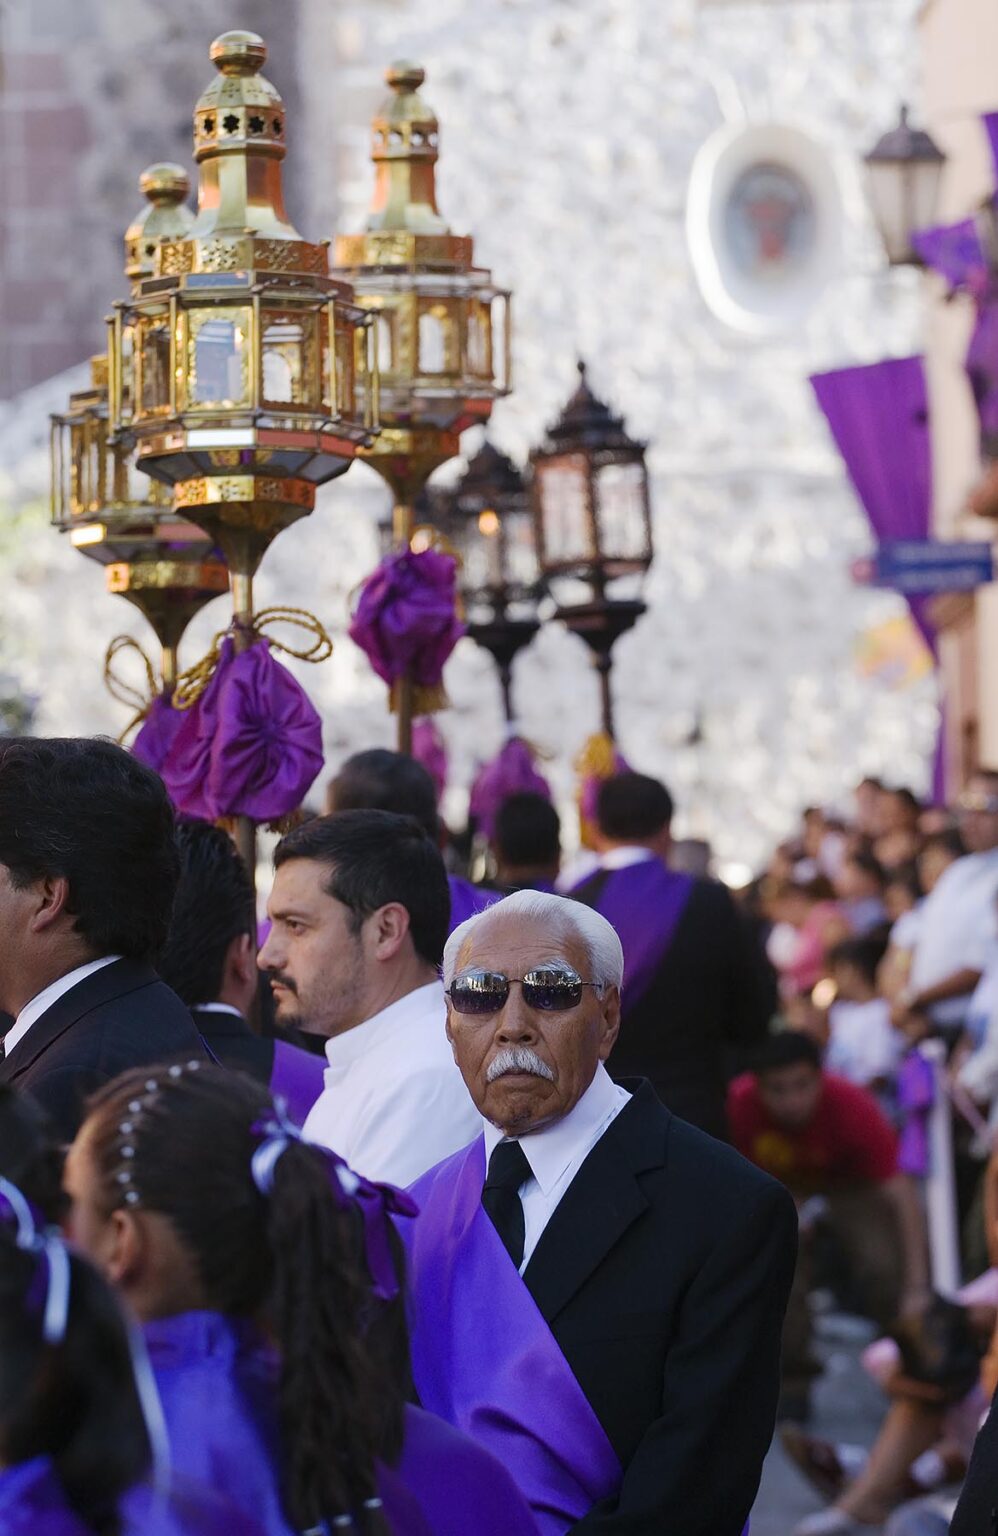 CATHOLIC men with lanterns  during EASTER PROCESSION - TEMPLO DEL ORATORIO, SAN MIGUEL DE ALLENDE, MEXICO